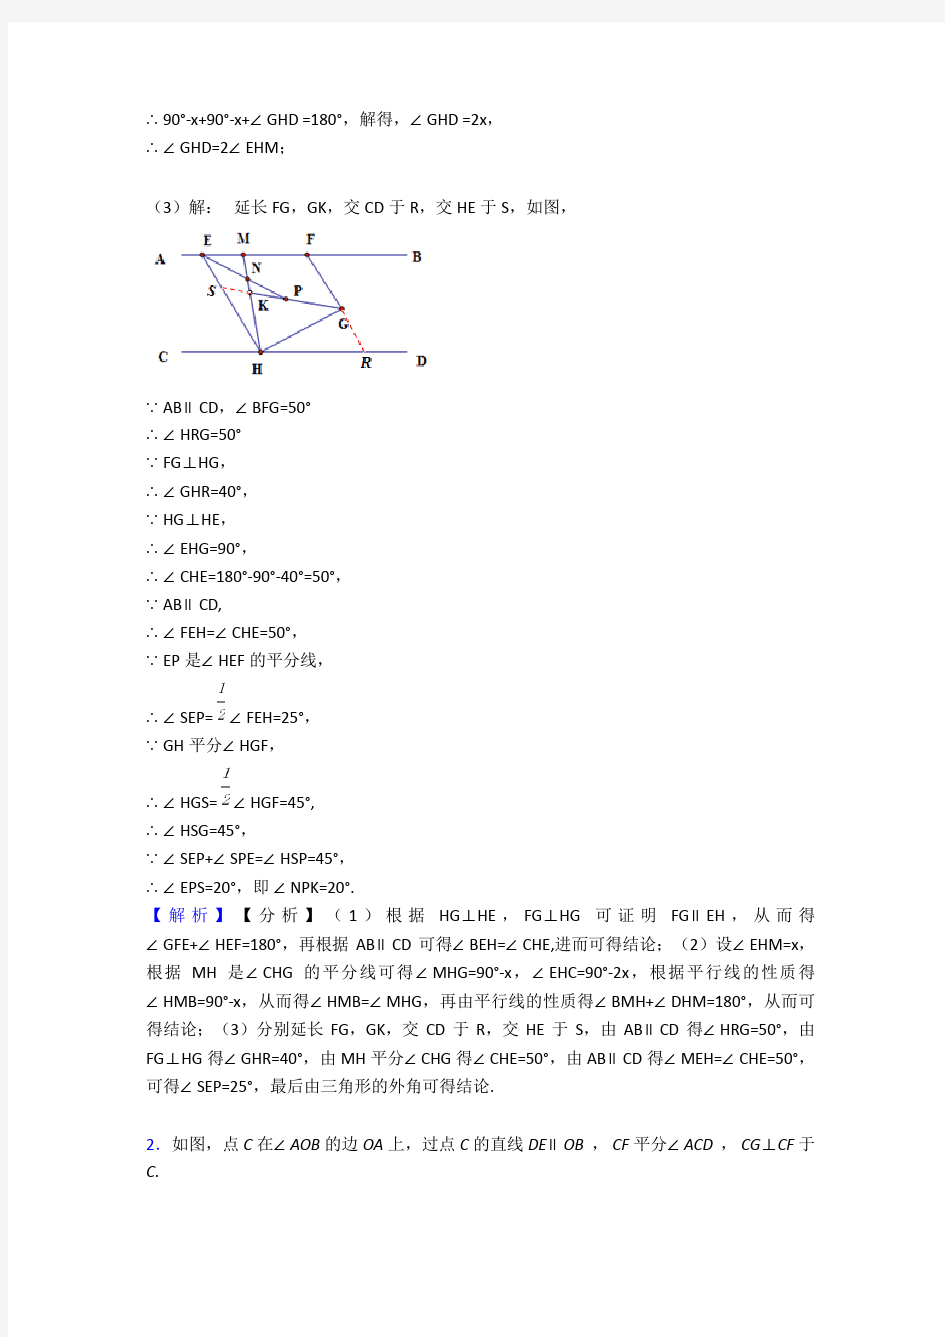 七年级数学几何图形初步专题练习(解析版)